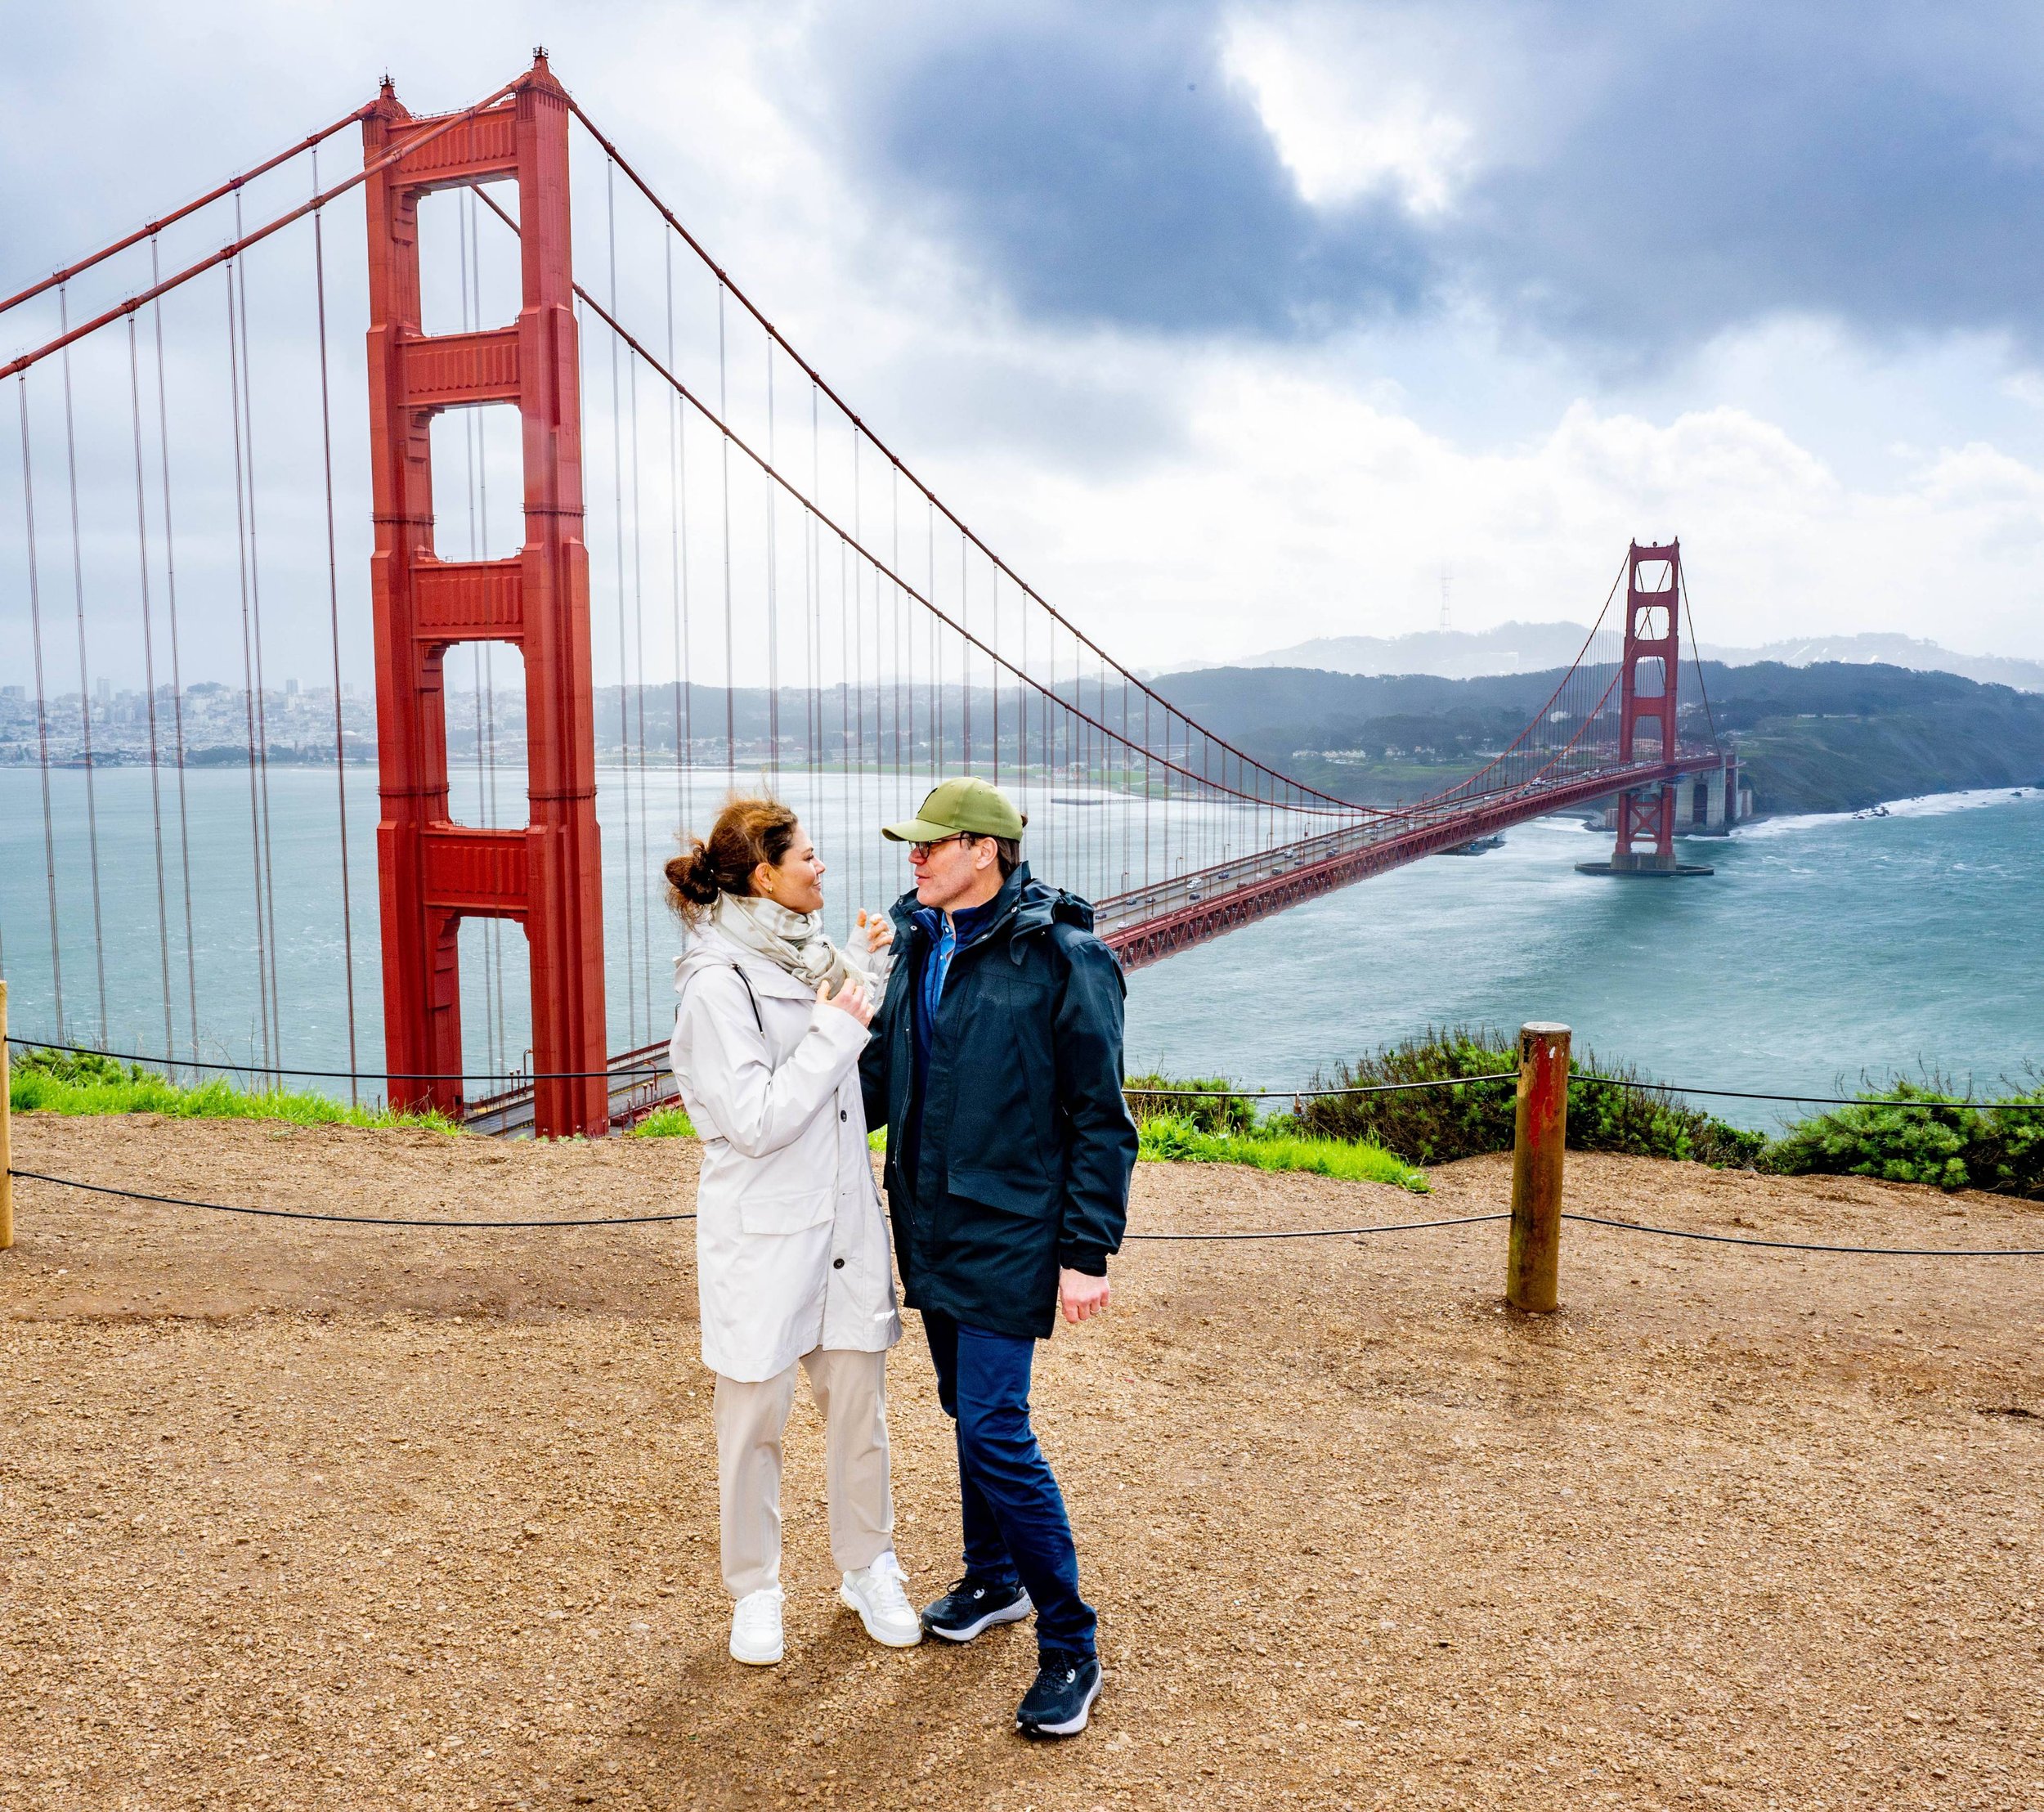 La princesa Victoria y el príncipe Daniel de Suecia deslumbran en su visita a California